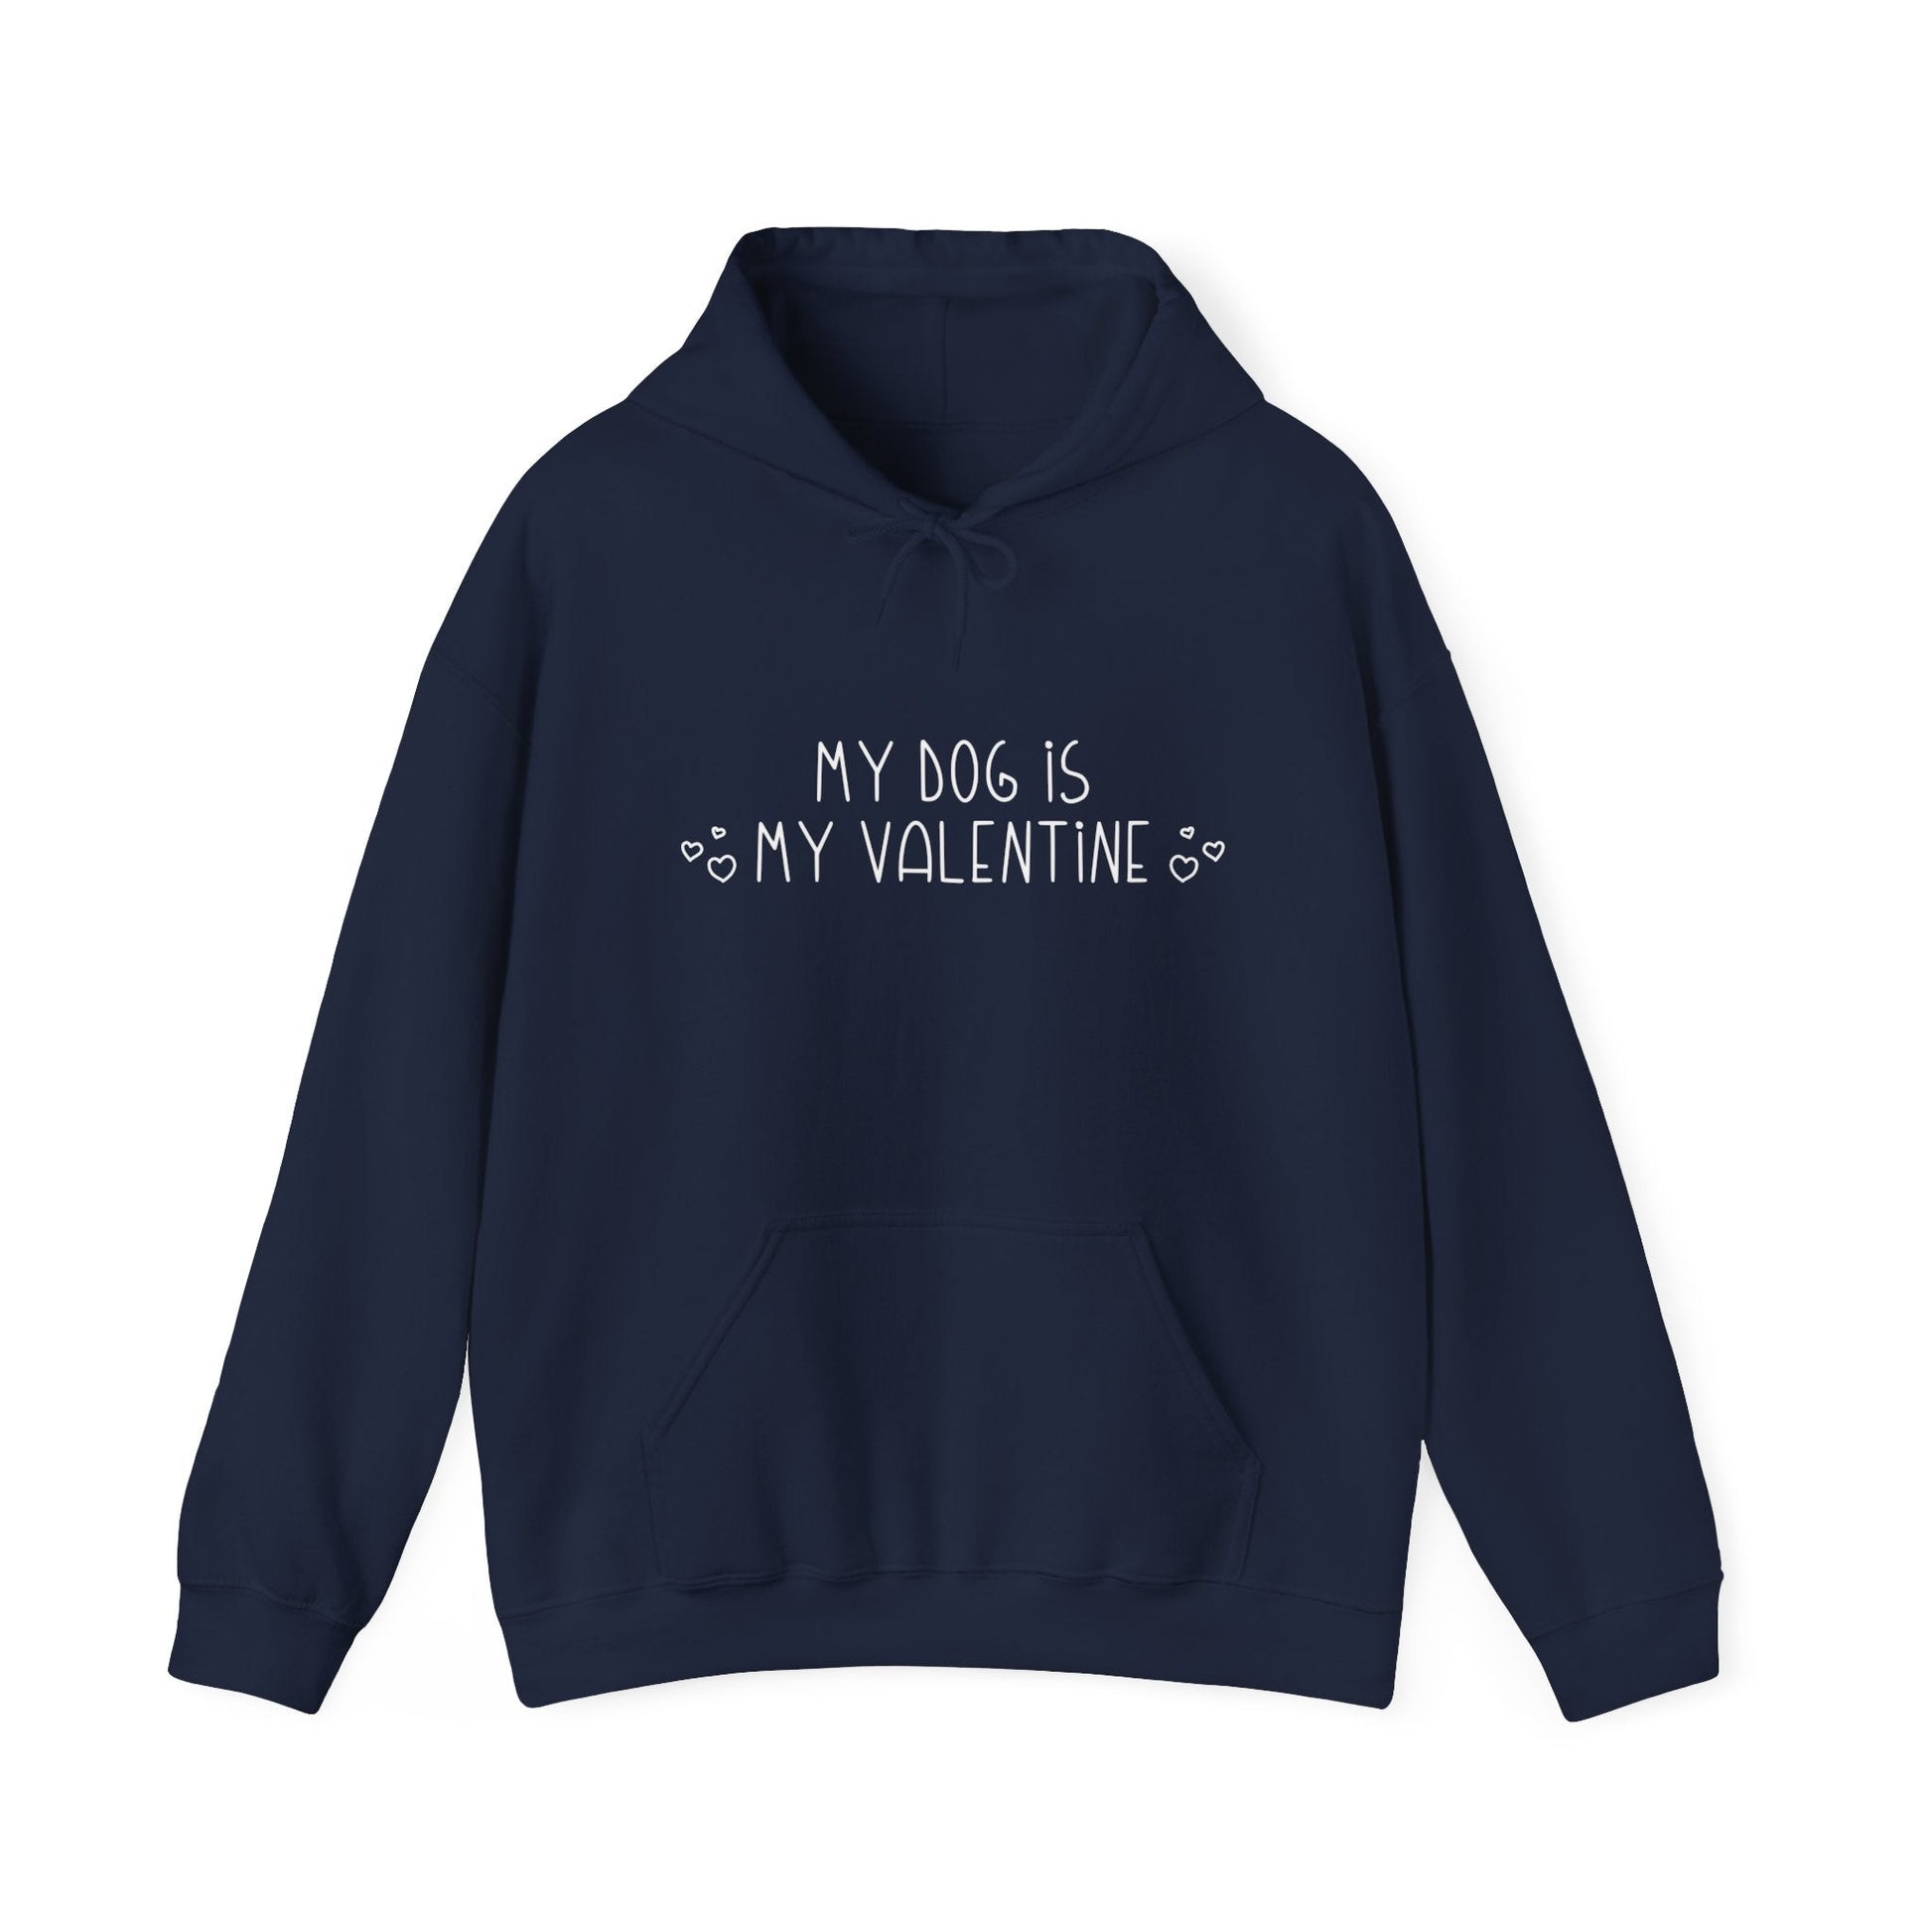 My Dog Is My Valentine | Hooded Sweatshirt - Detezi Designs-51494831512481356442